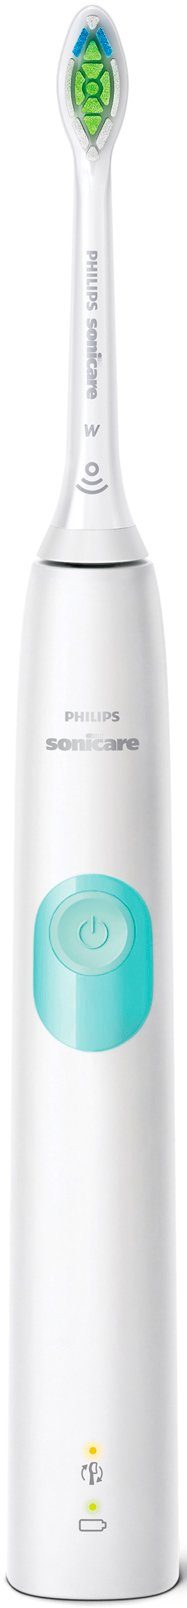 Philips Sonicare Elektrische mit Ladestation, und Funktion, HX6807/28, Aufsteckbürsten: Zahnbürste St., BrushSync 4300 ProtectiveClean Schalltechnologie 1 Reiseetui